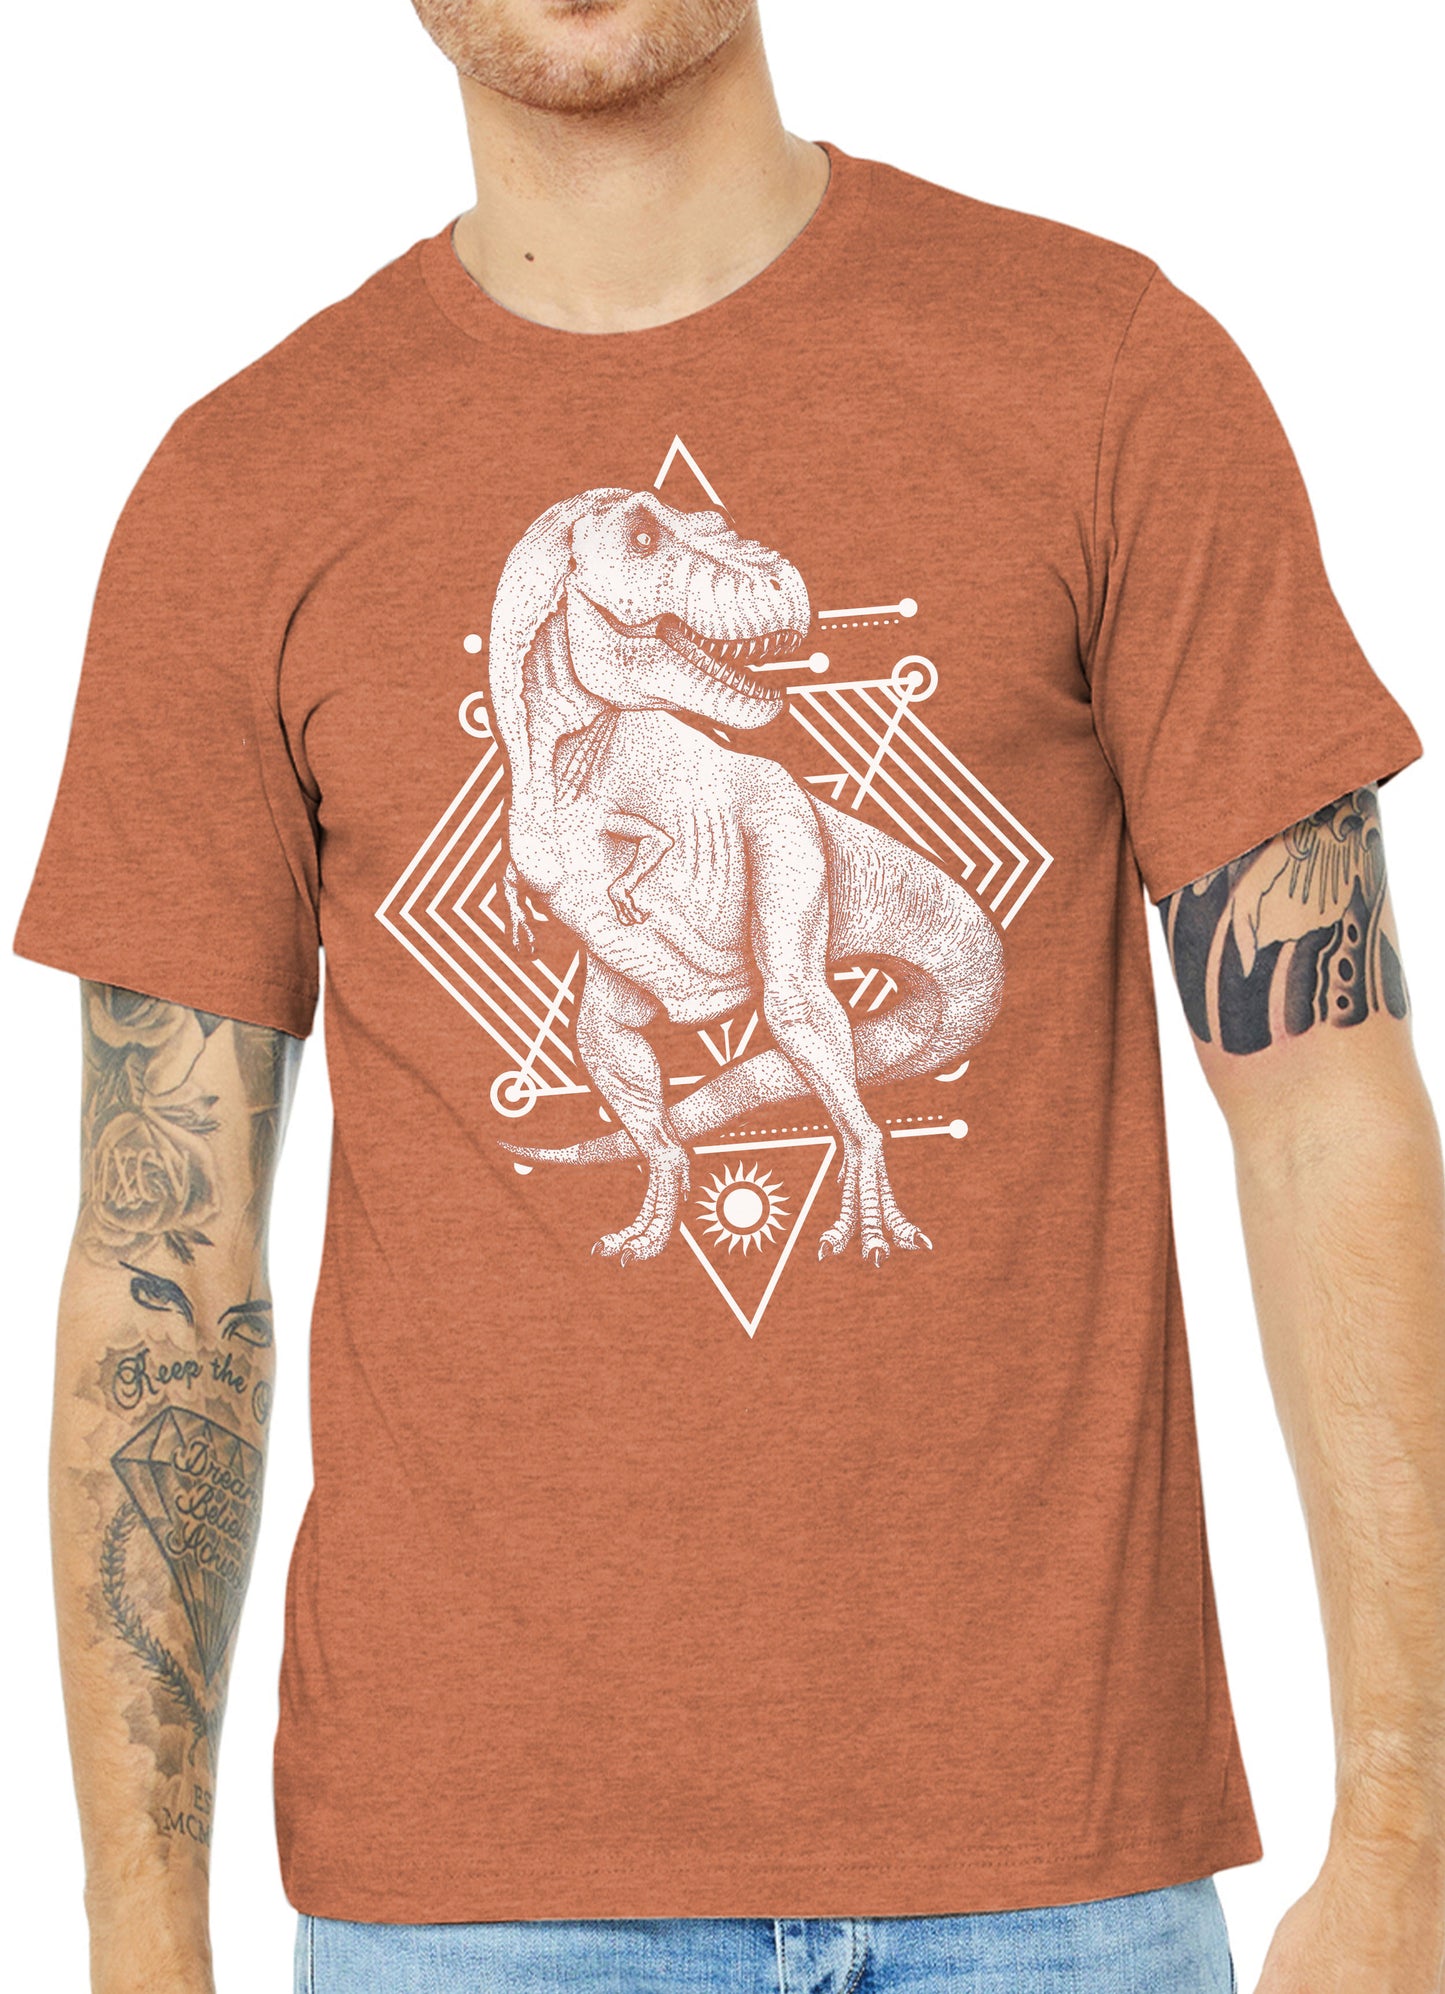 Dinosaur tshirt. Adult dinosaur shirt. Trex shirt.